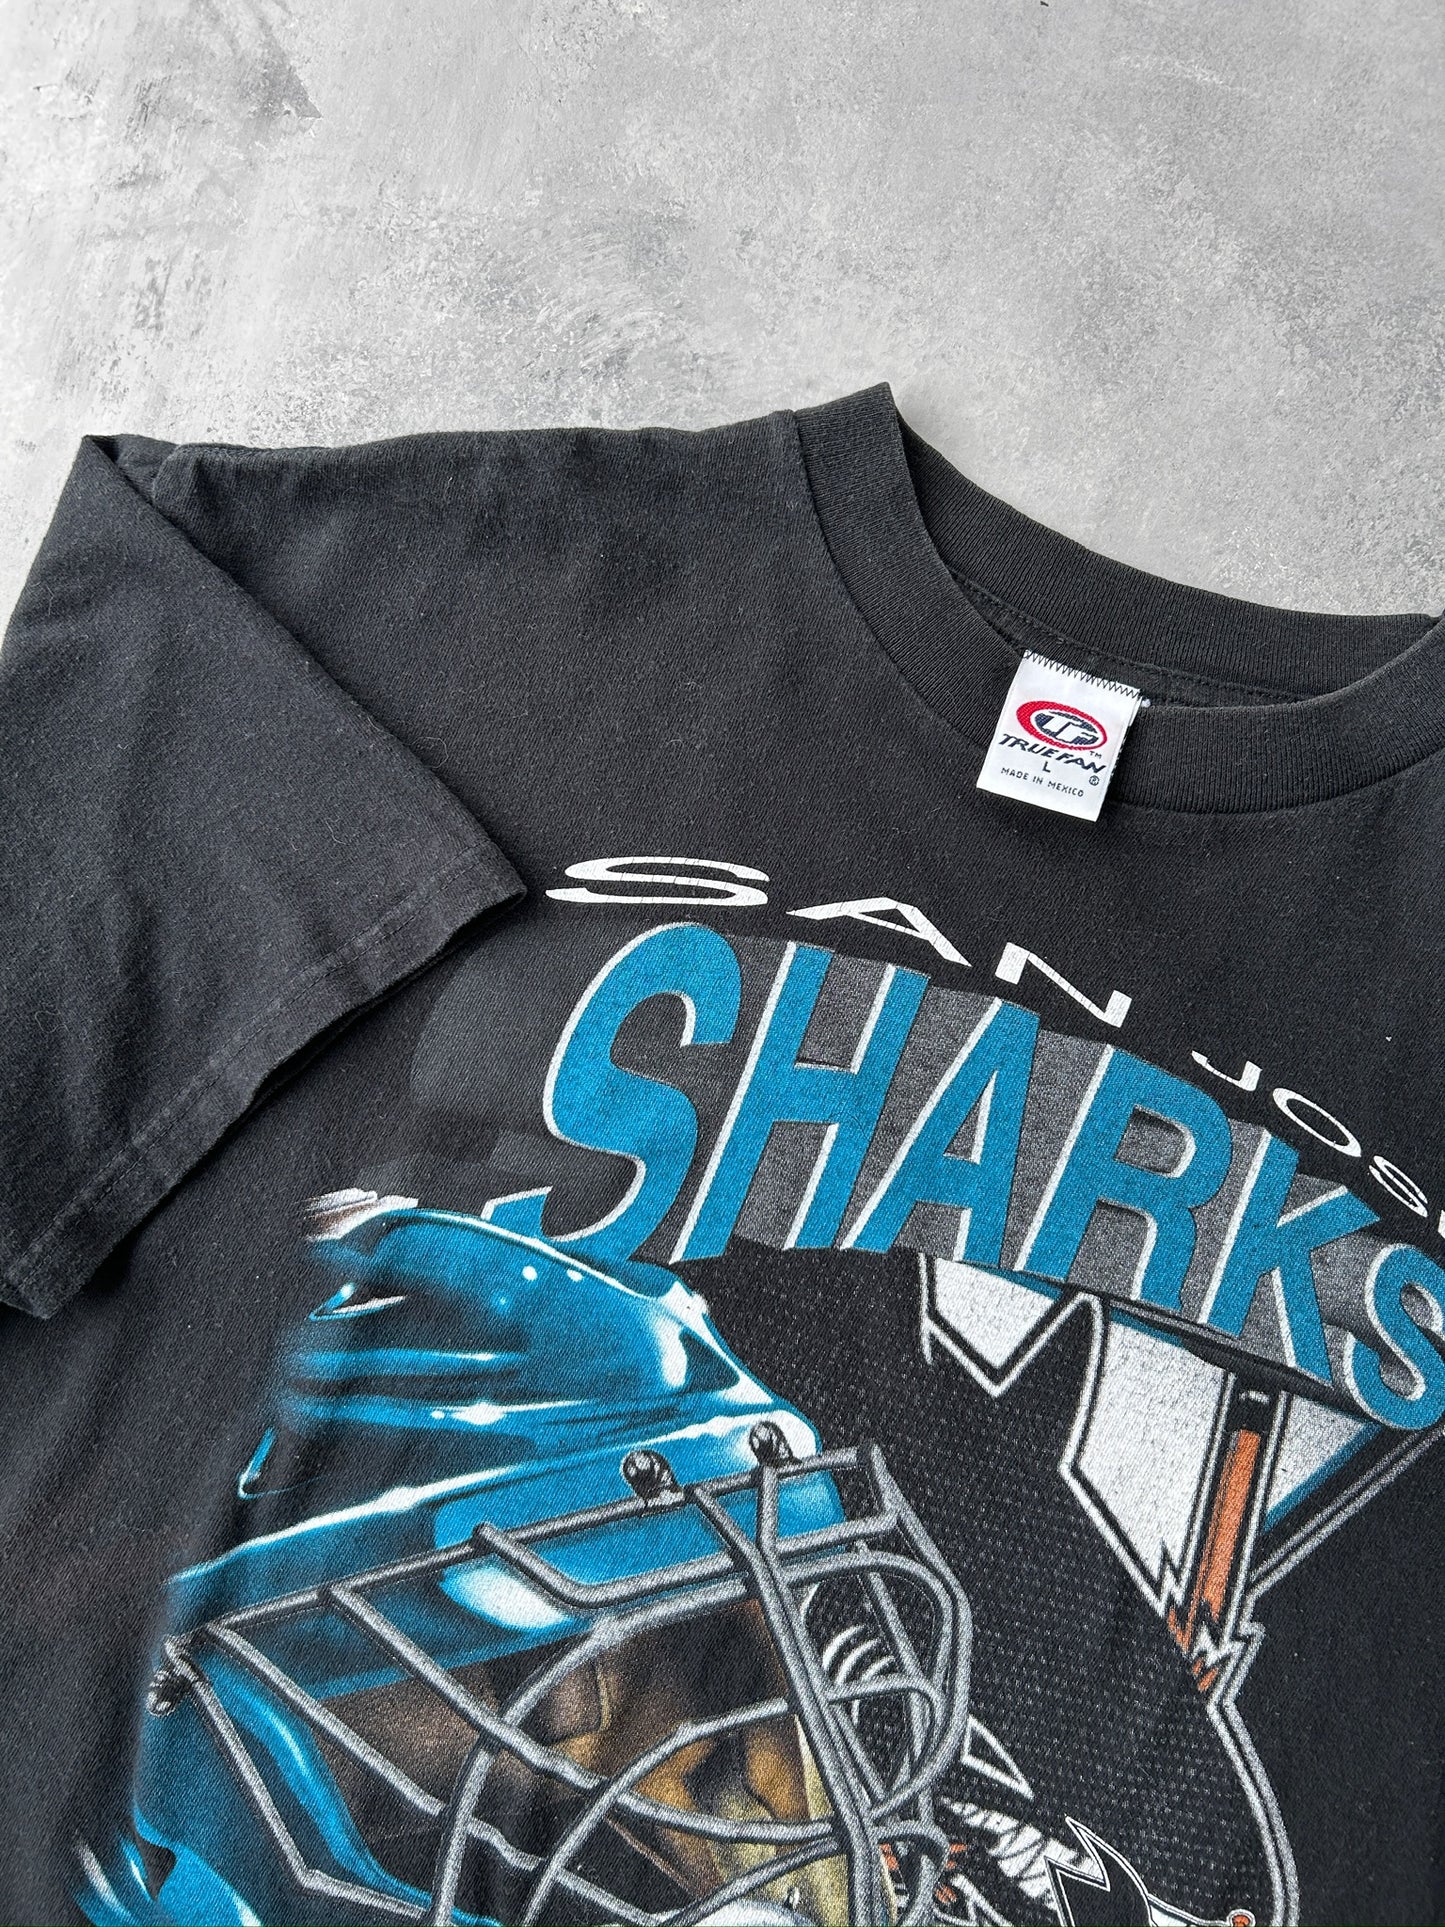 San Jose Sharks T-Shirt 90's - Large / XL